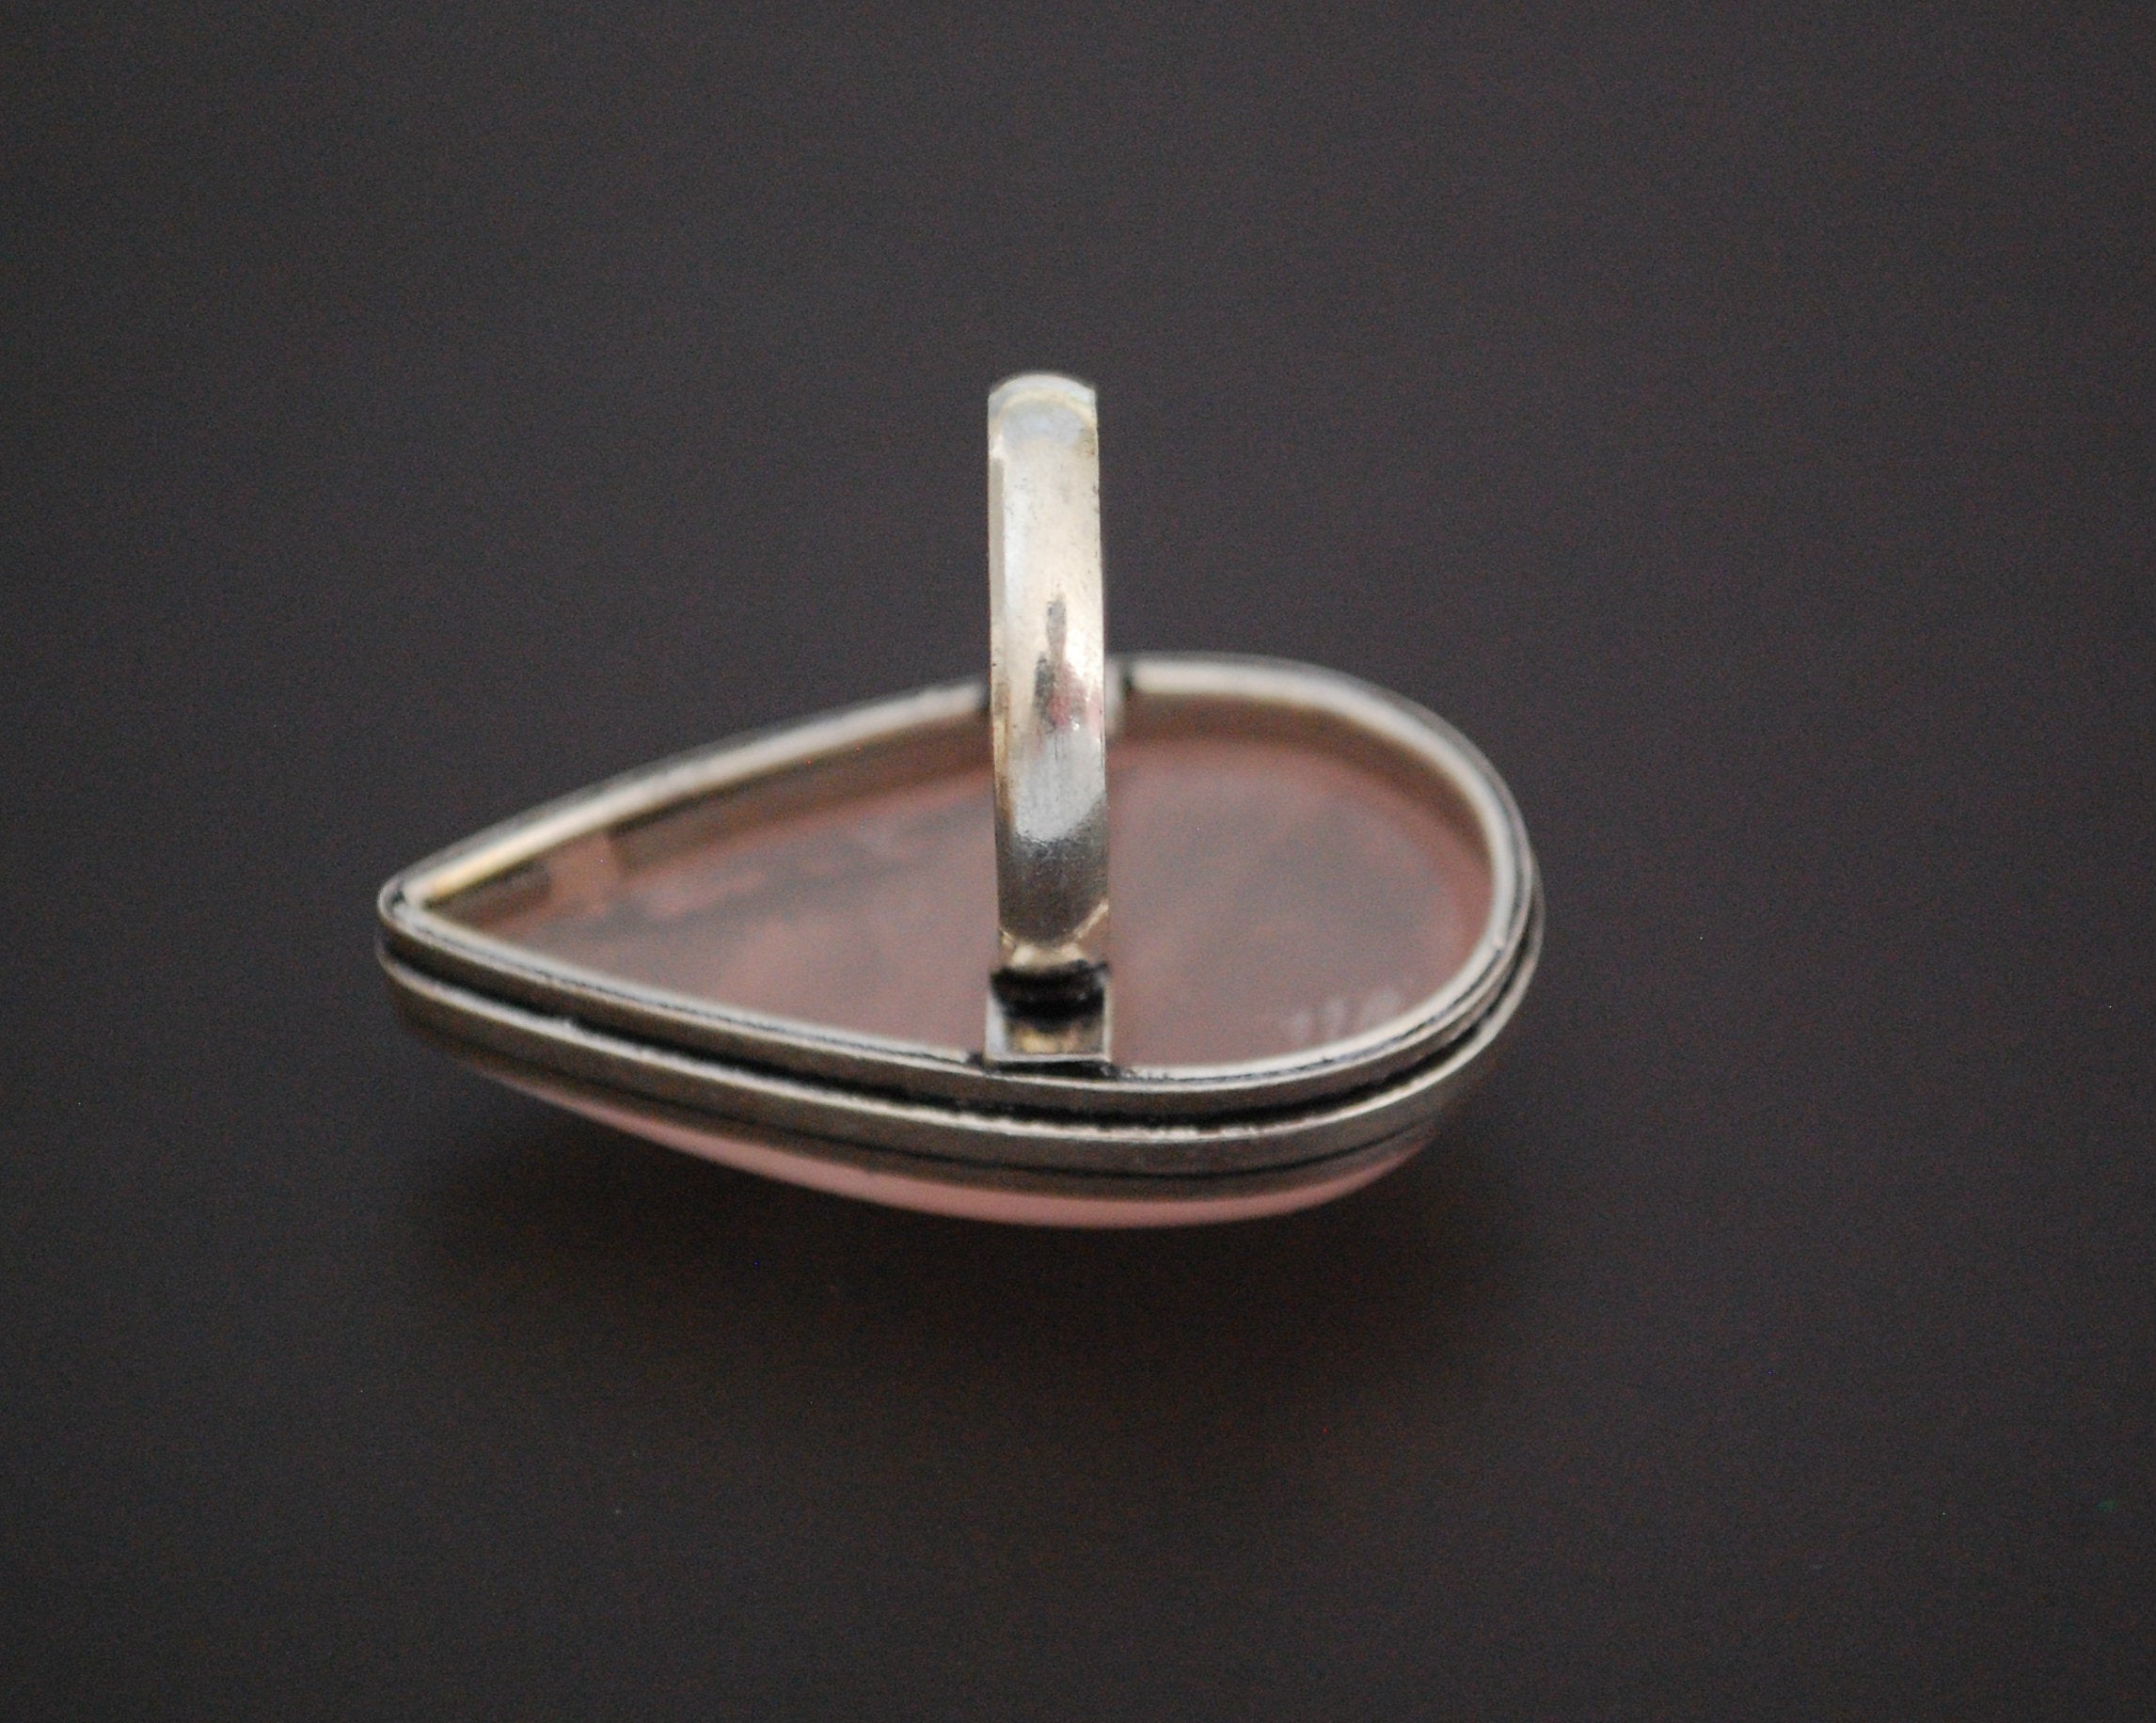 Ethnic Rose Quartz Ring - Size 7.75 / 8